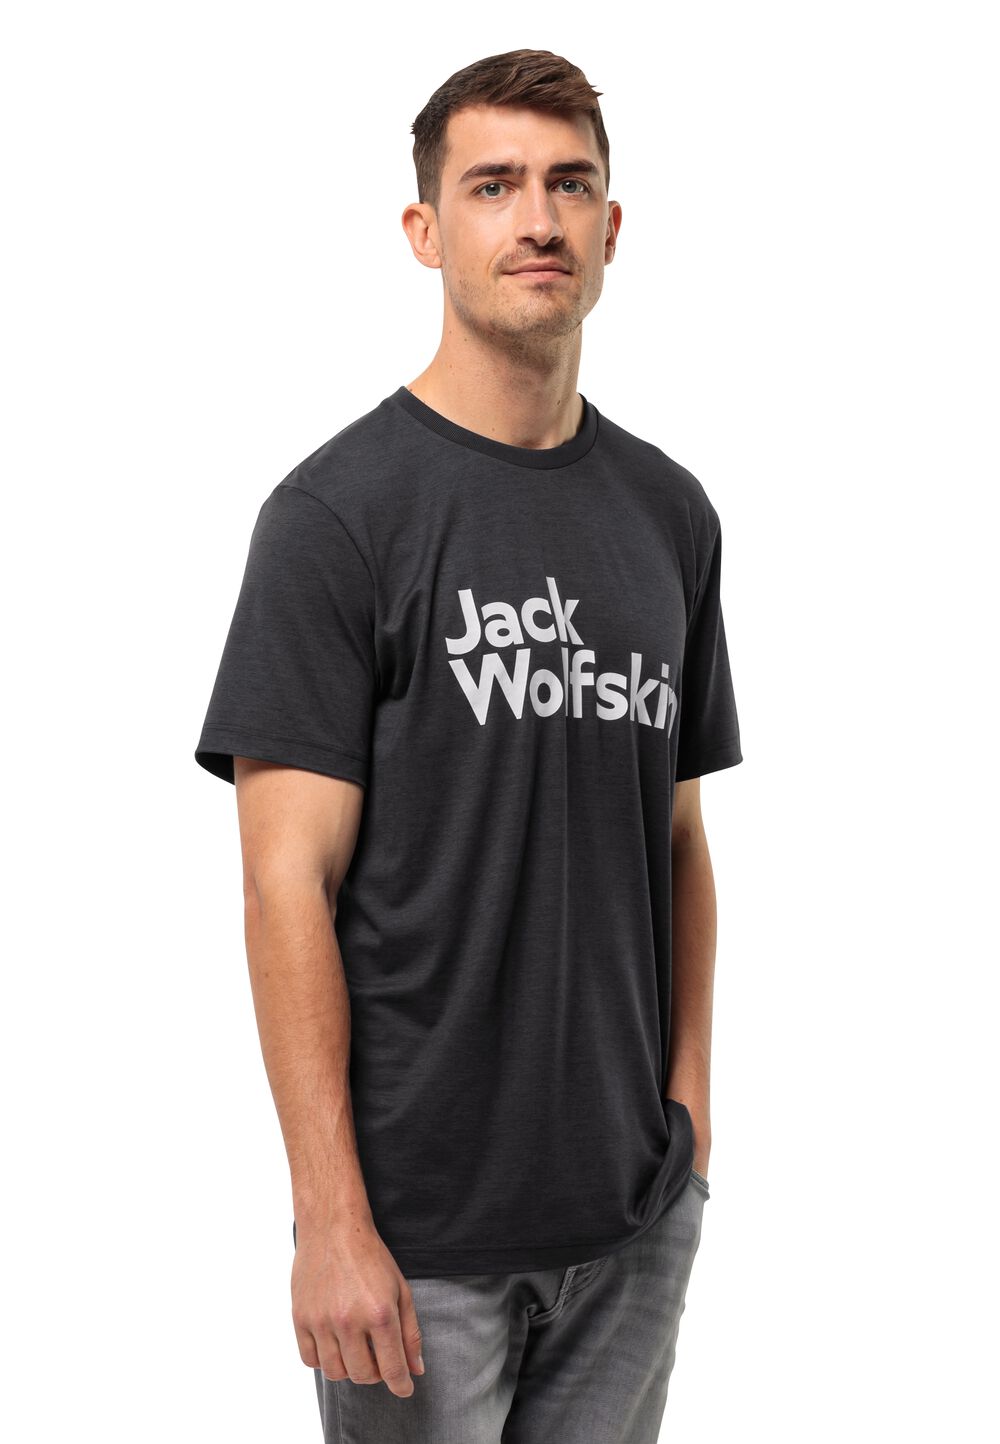 Jack Wolfskin Funktionsshirt Herren Brand T-Shirt Men M schwarz black von Jack Wolfskin